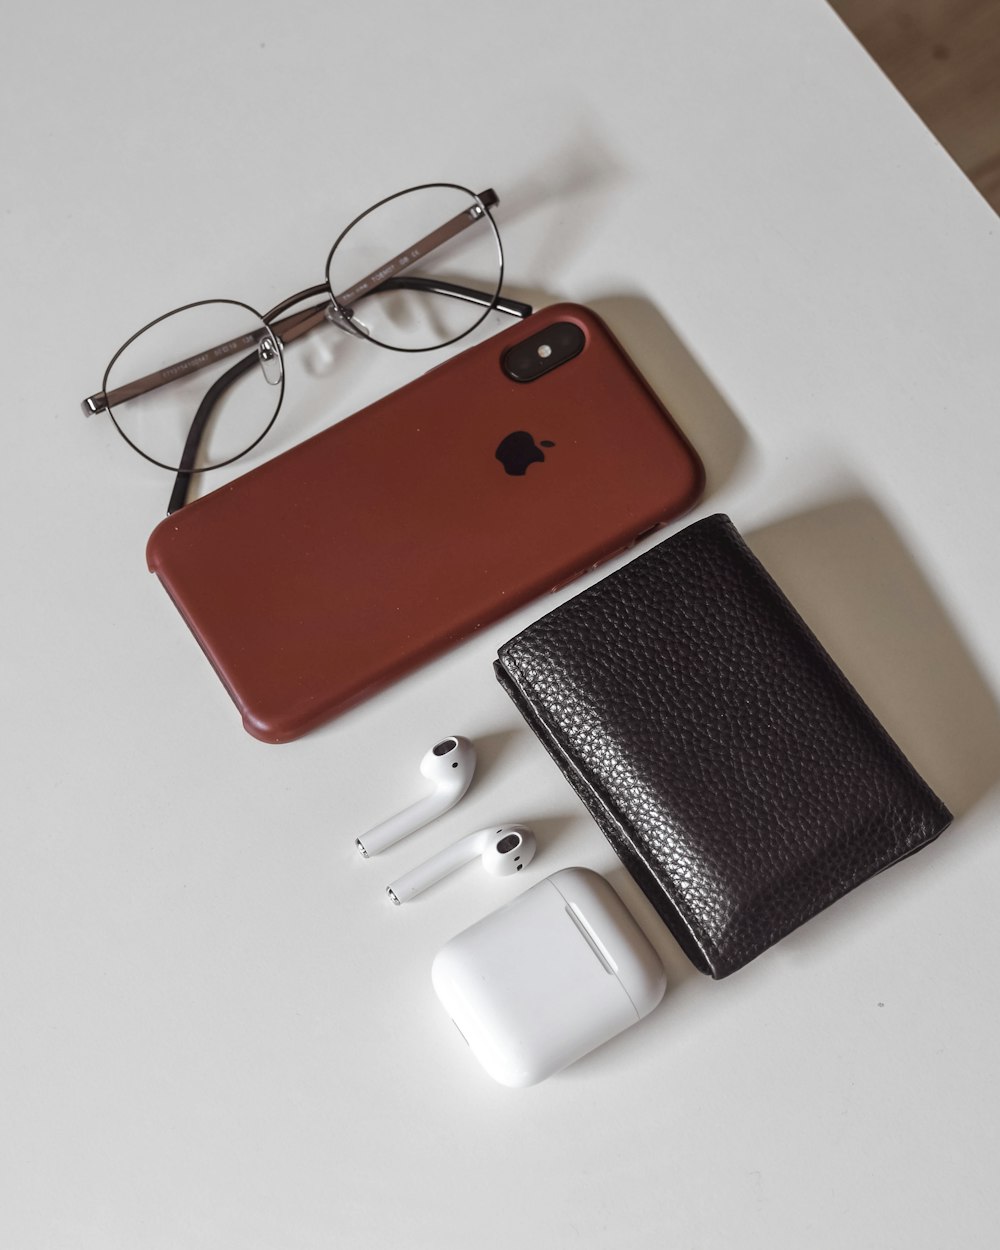 Rote und schwarze iPhone Hülle neben weißem Lederportemonnaie